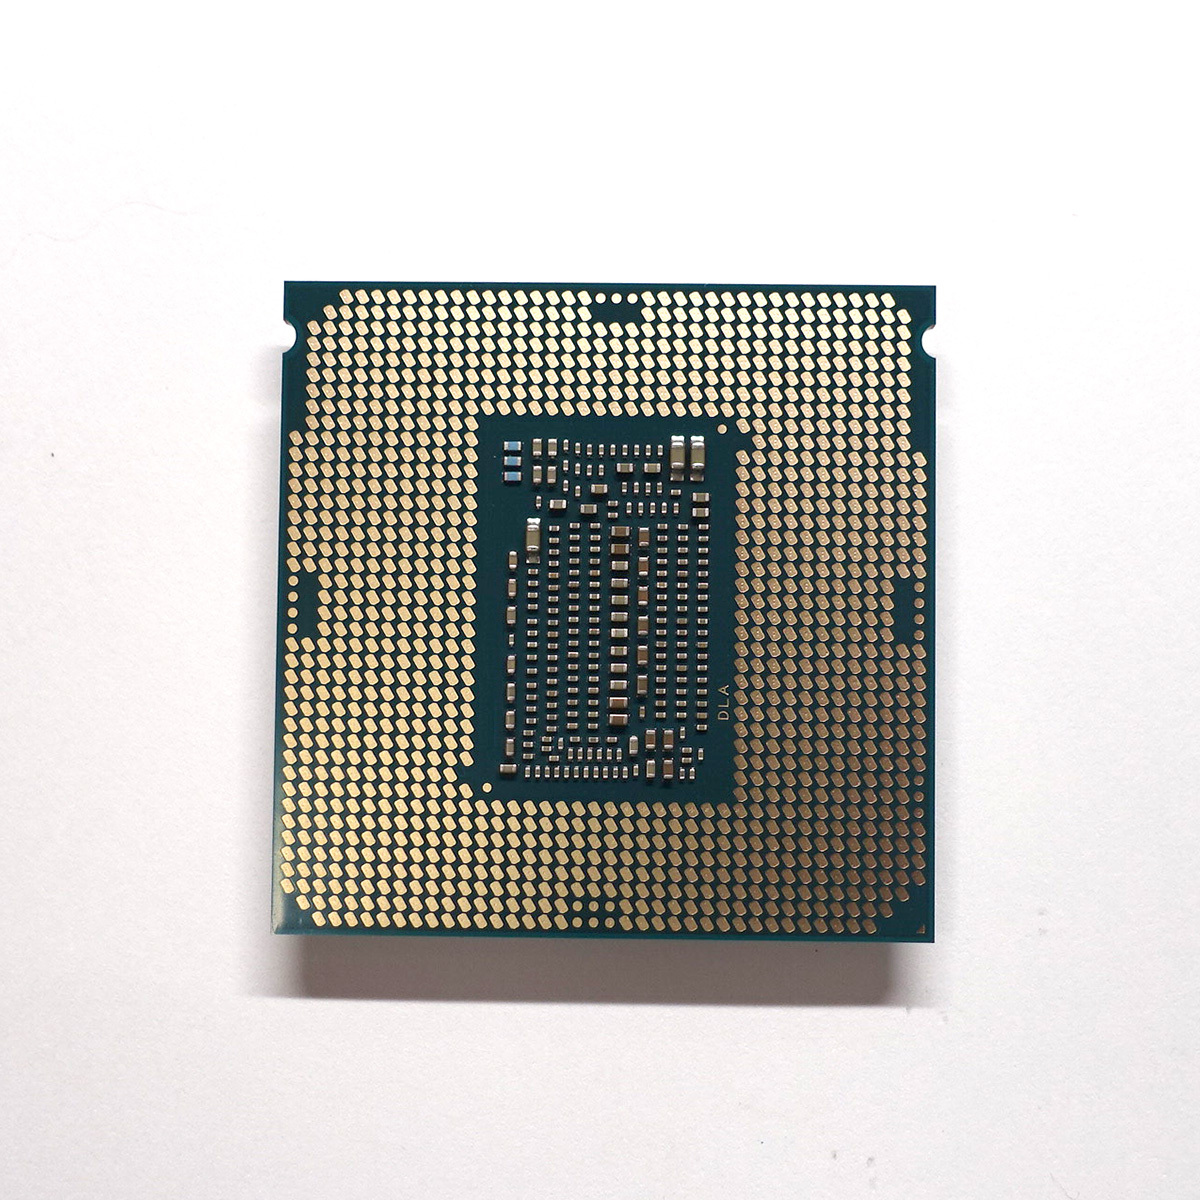 【送料無料】Intel Core i7-9700K プロセッサー 3.6GHz CPUの画像2